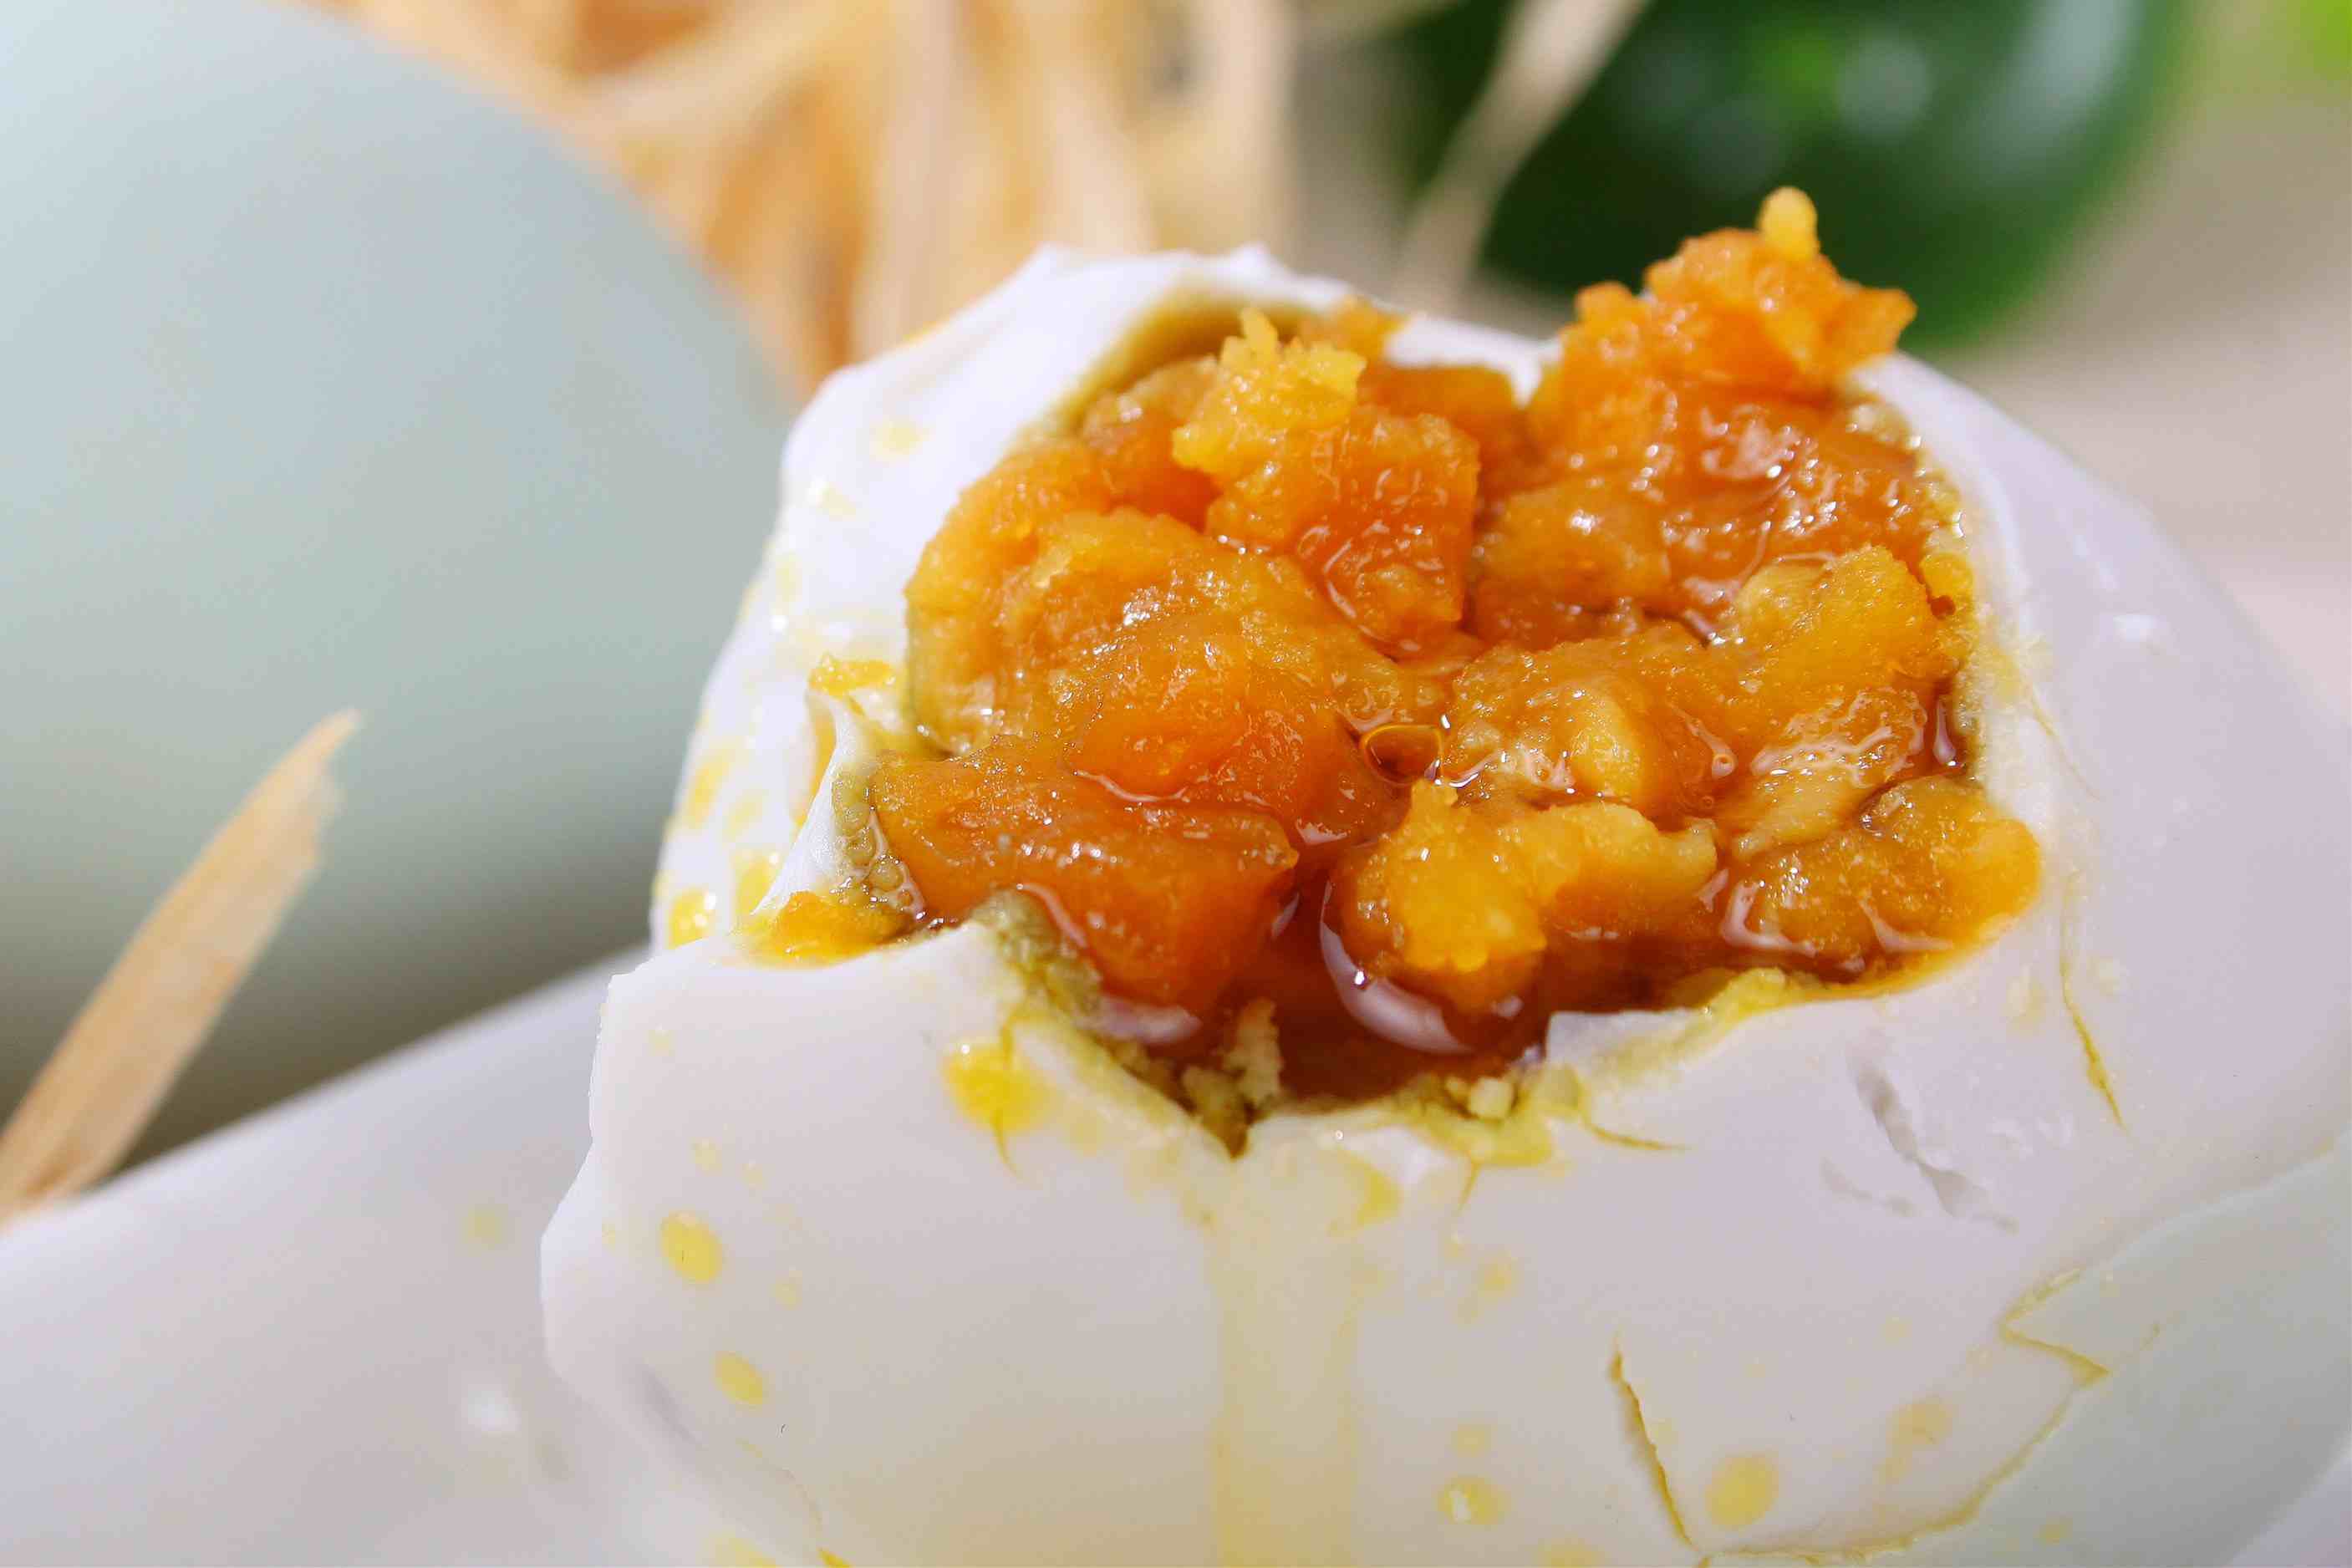 金沙咸蛋黄曲奇,金沙咸蛋黄曲奇的家常做法 - 美食杰金沙咸蛋黄曲奇做法大全